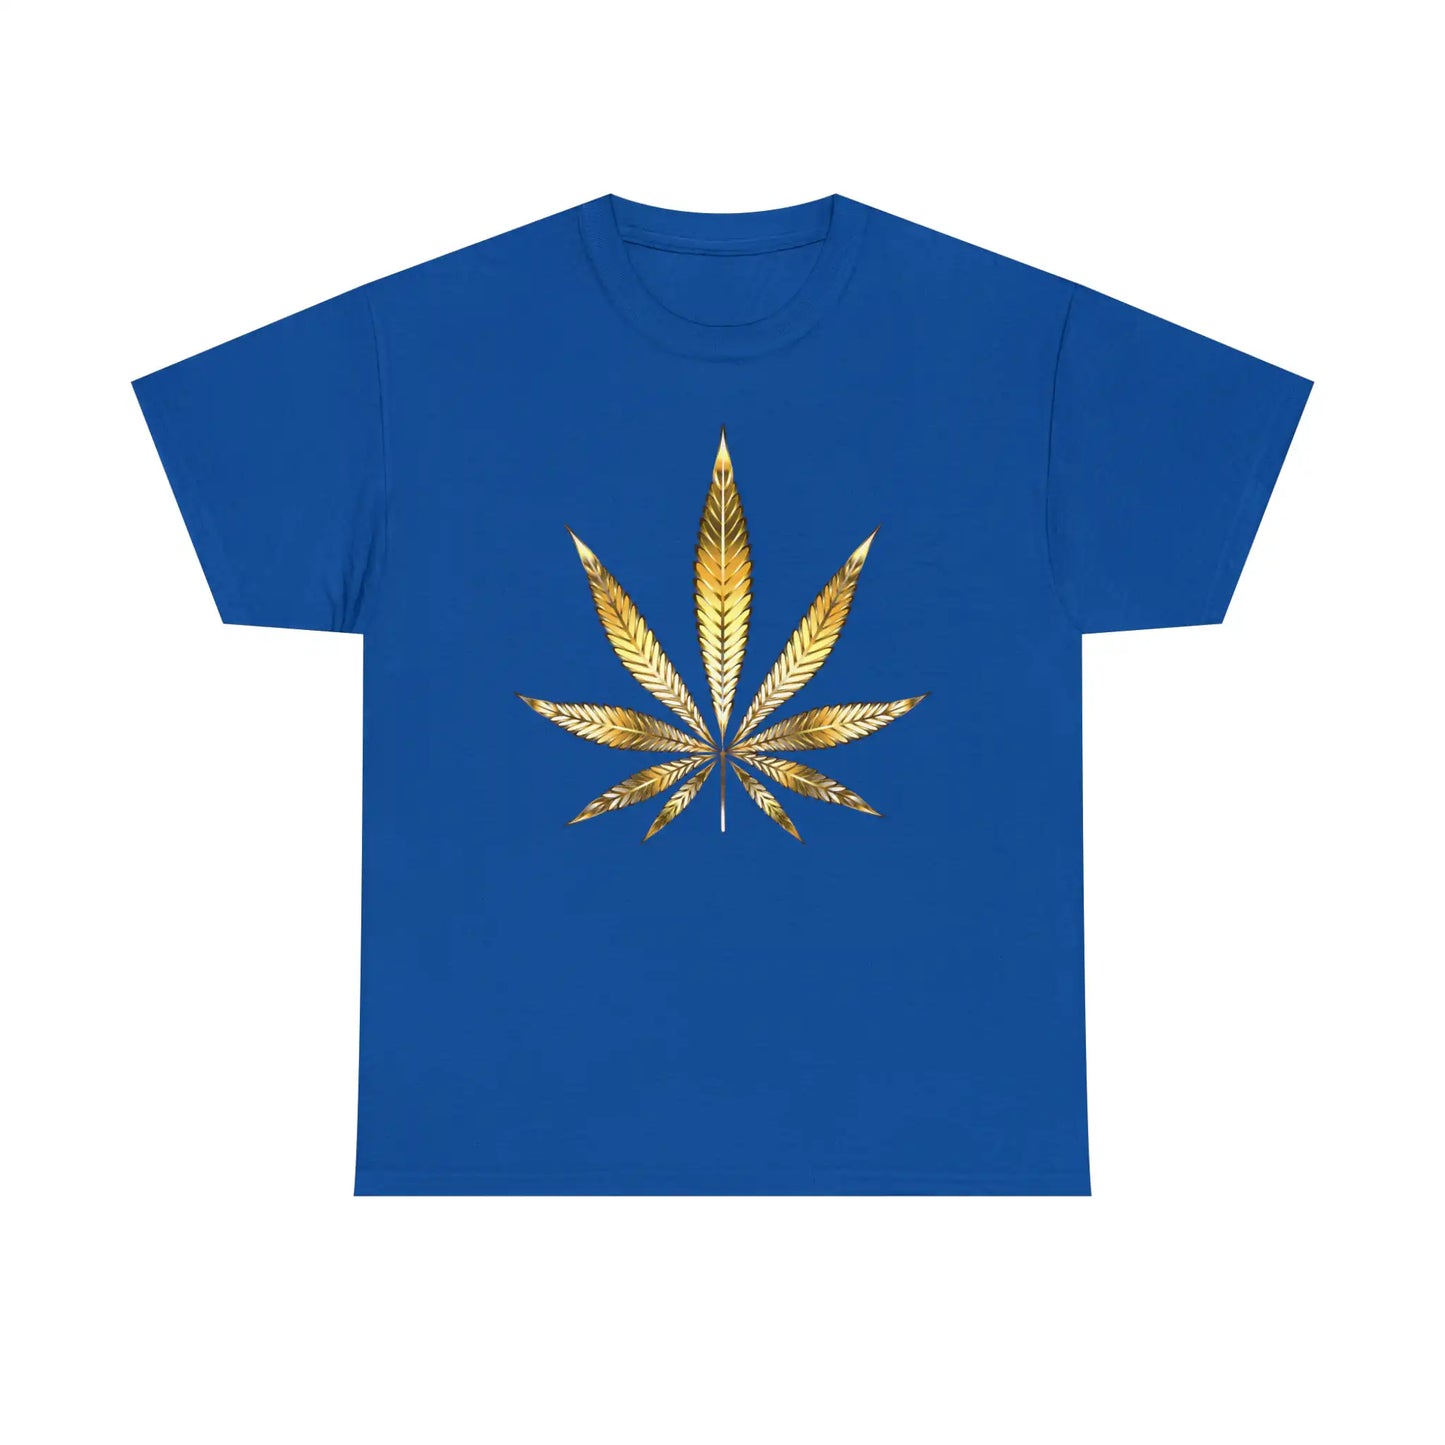 a Gold Marijuana Leaf Tee on a blue t-shirt.